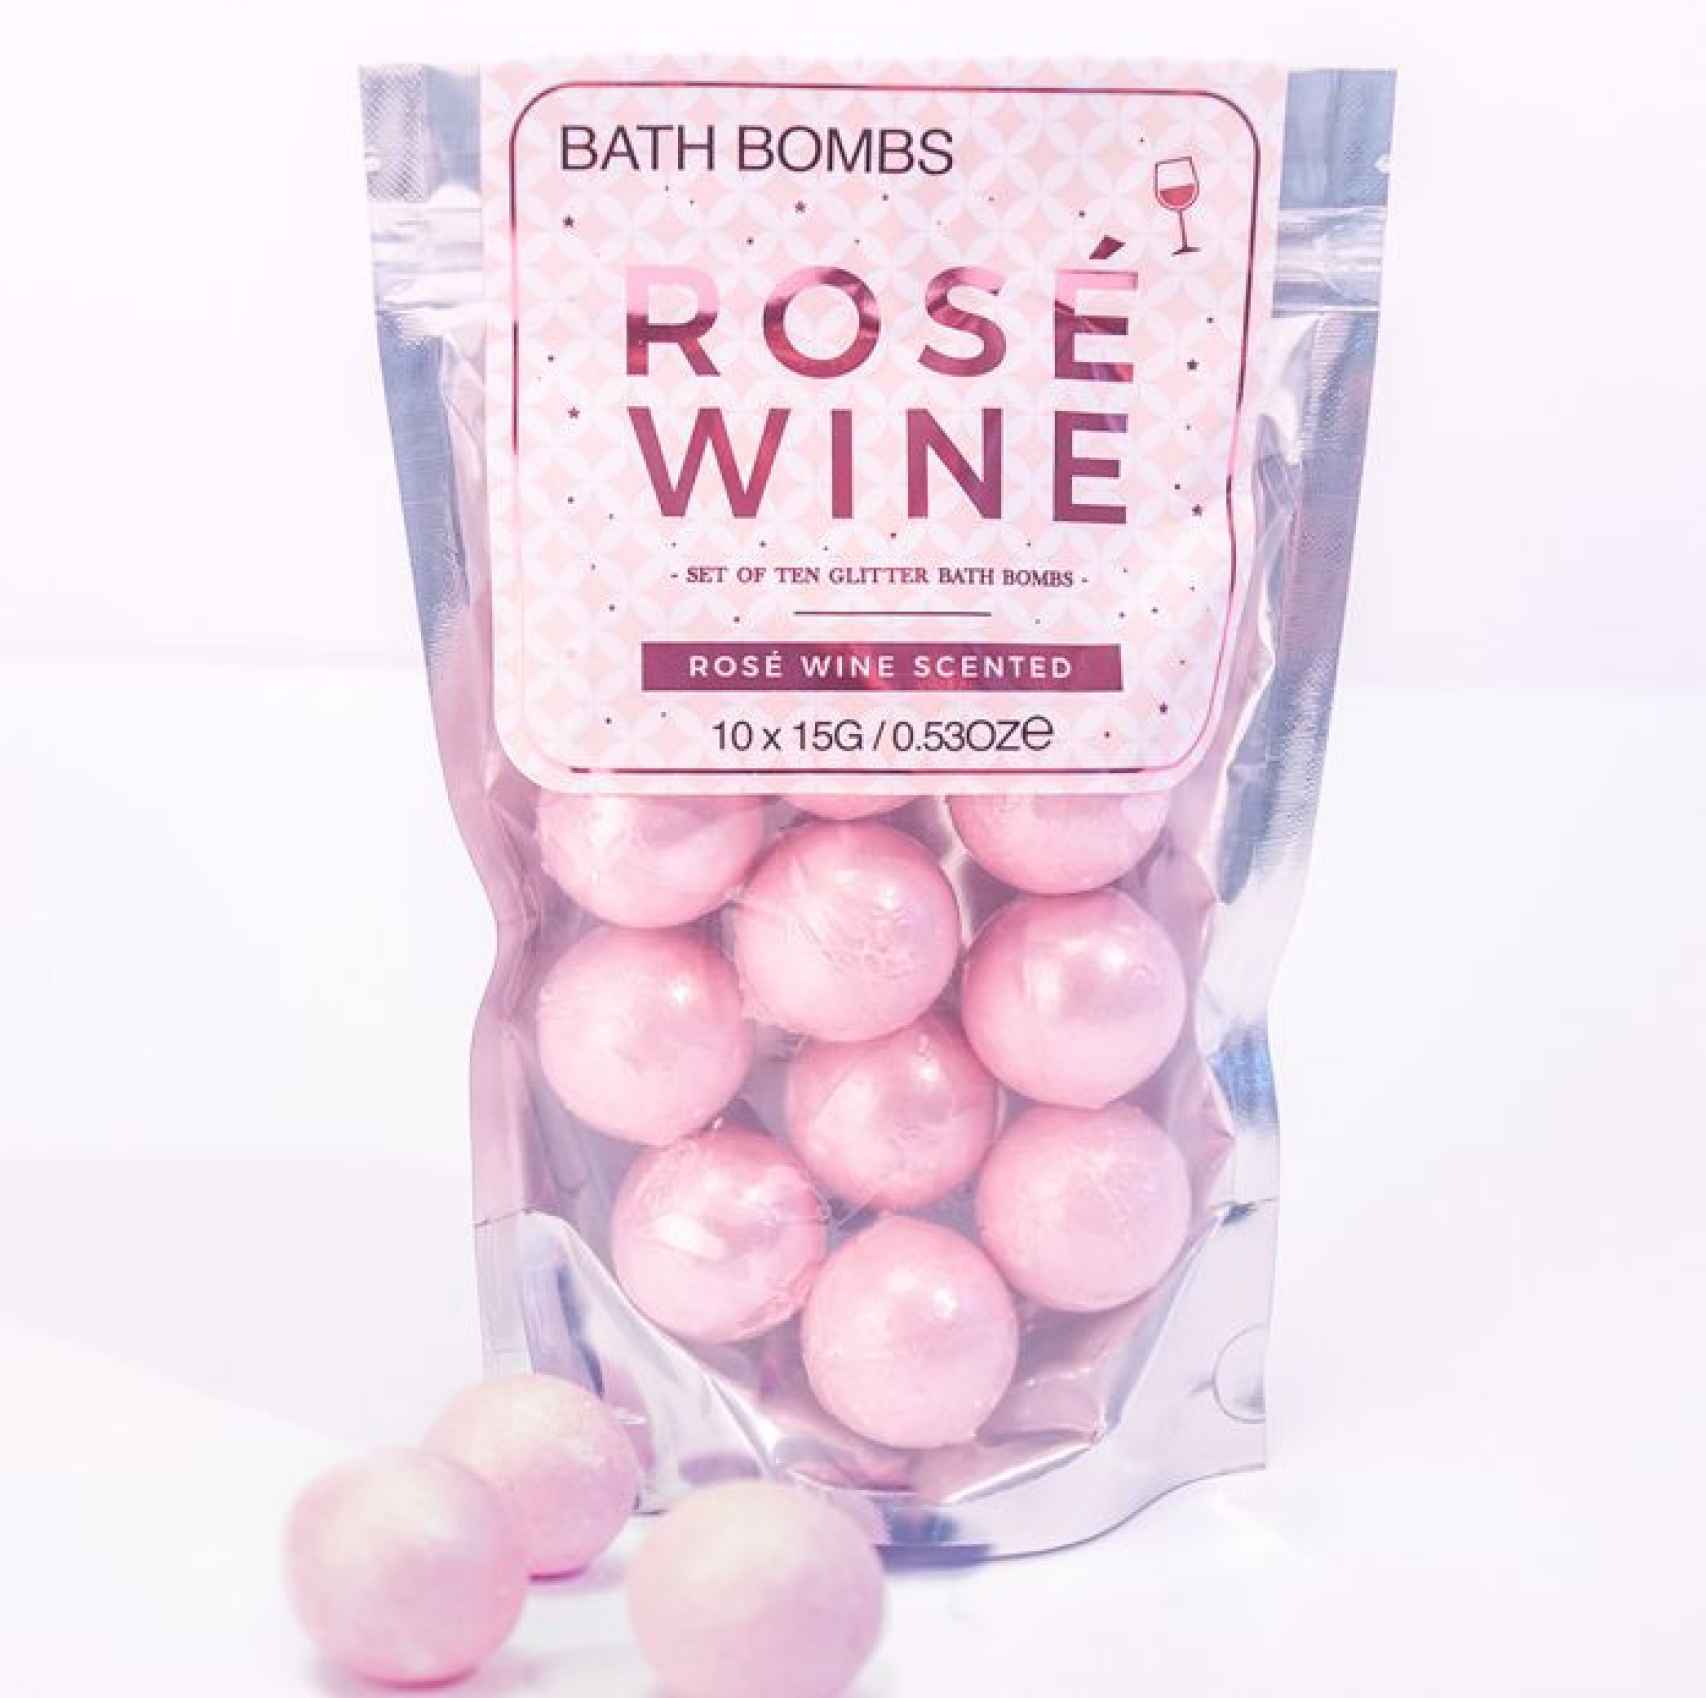 Bombas de baño vino rosado